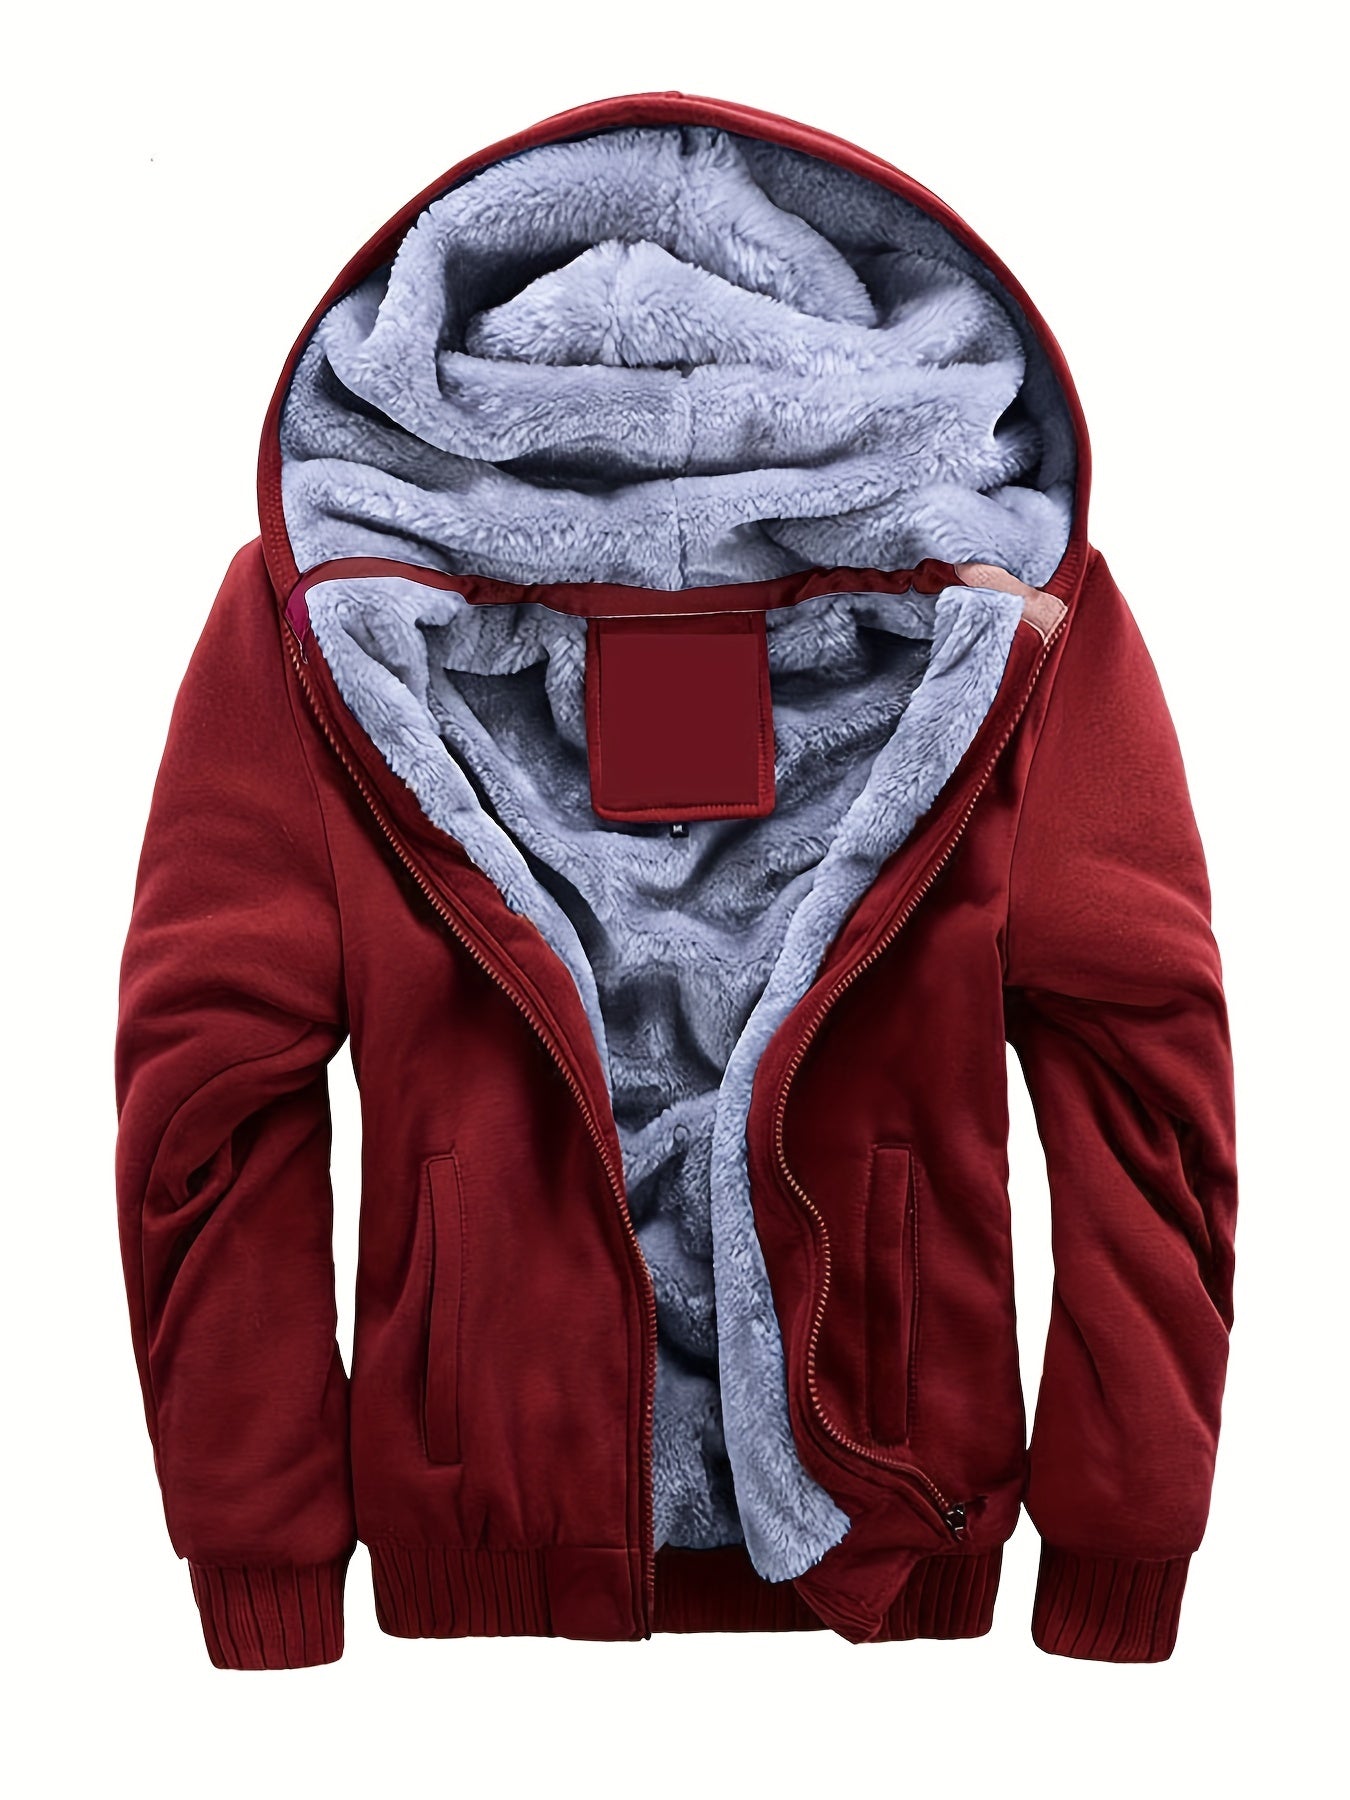 Men's Warm Fleece Hooded Jacket Coat, Warm Thick Zip Up Hoodie For Fall Winter